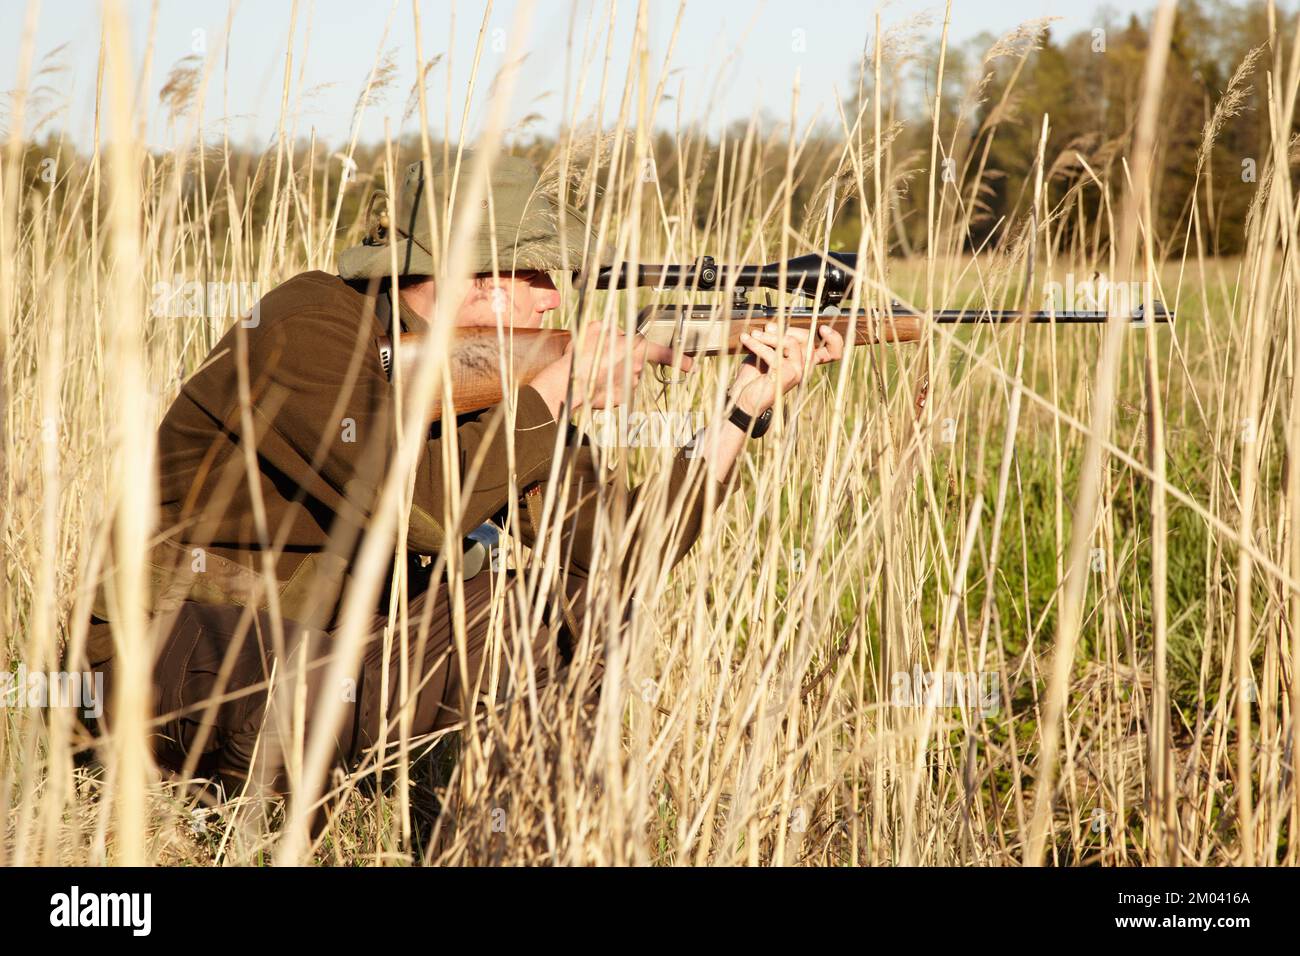 Von der Natur verborgen. Ein Wildjäger, der seine Waffe in der Hand hält und auf etwas zielt, während er sich im Schilf im Freien versteckt. Stockfoto